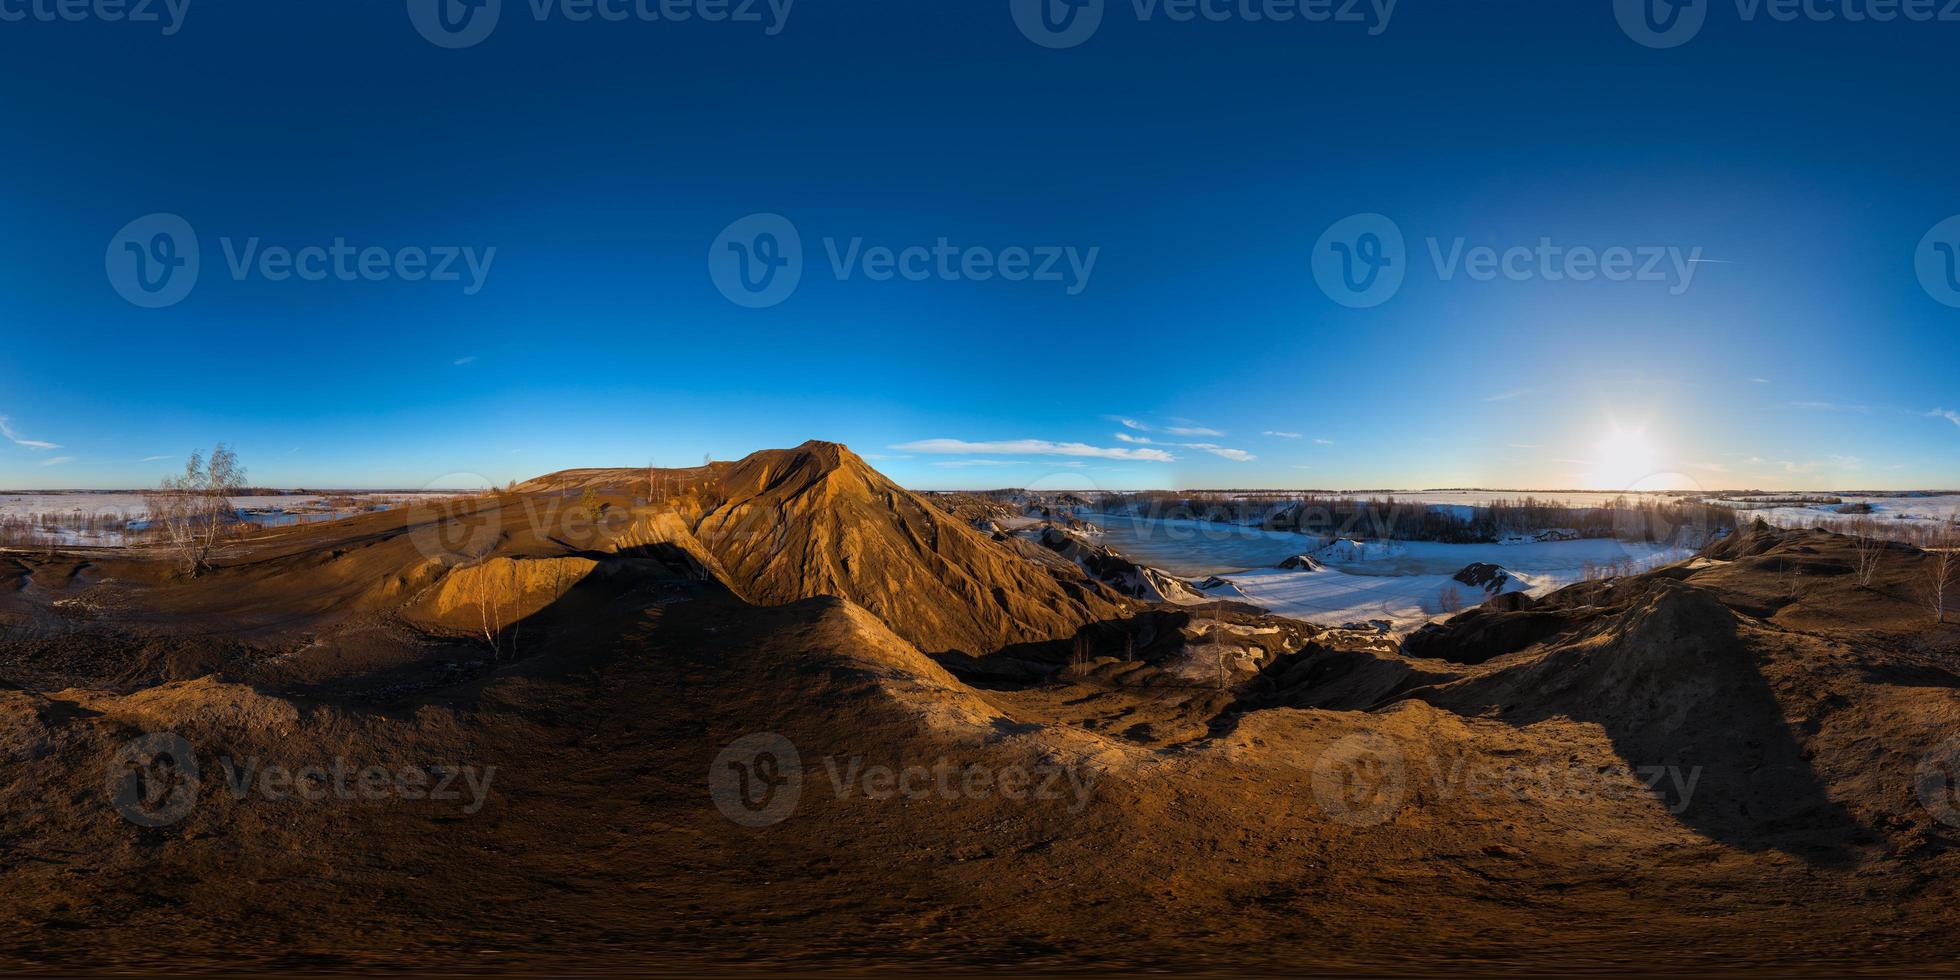 Clay Hills Steinbruch am Zweig Sonnenuntergang sphärisches 360-Grad-Panorama in gleichwinkliger Projektion foto